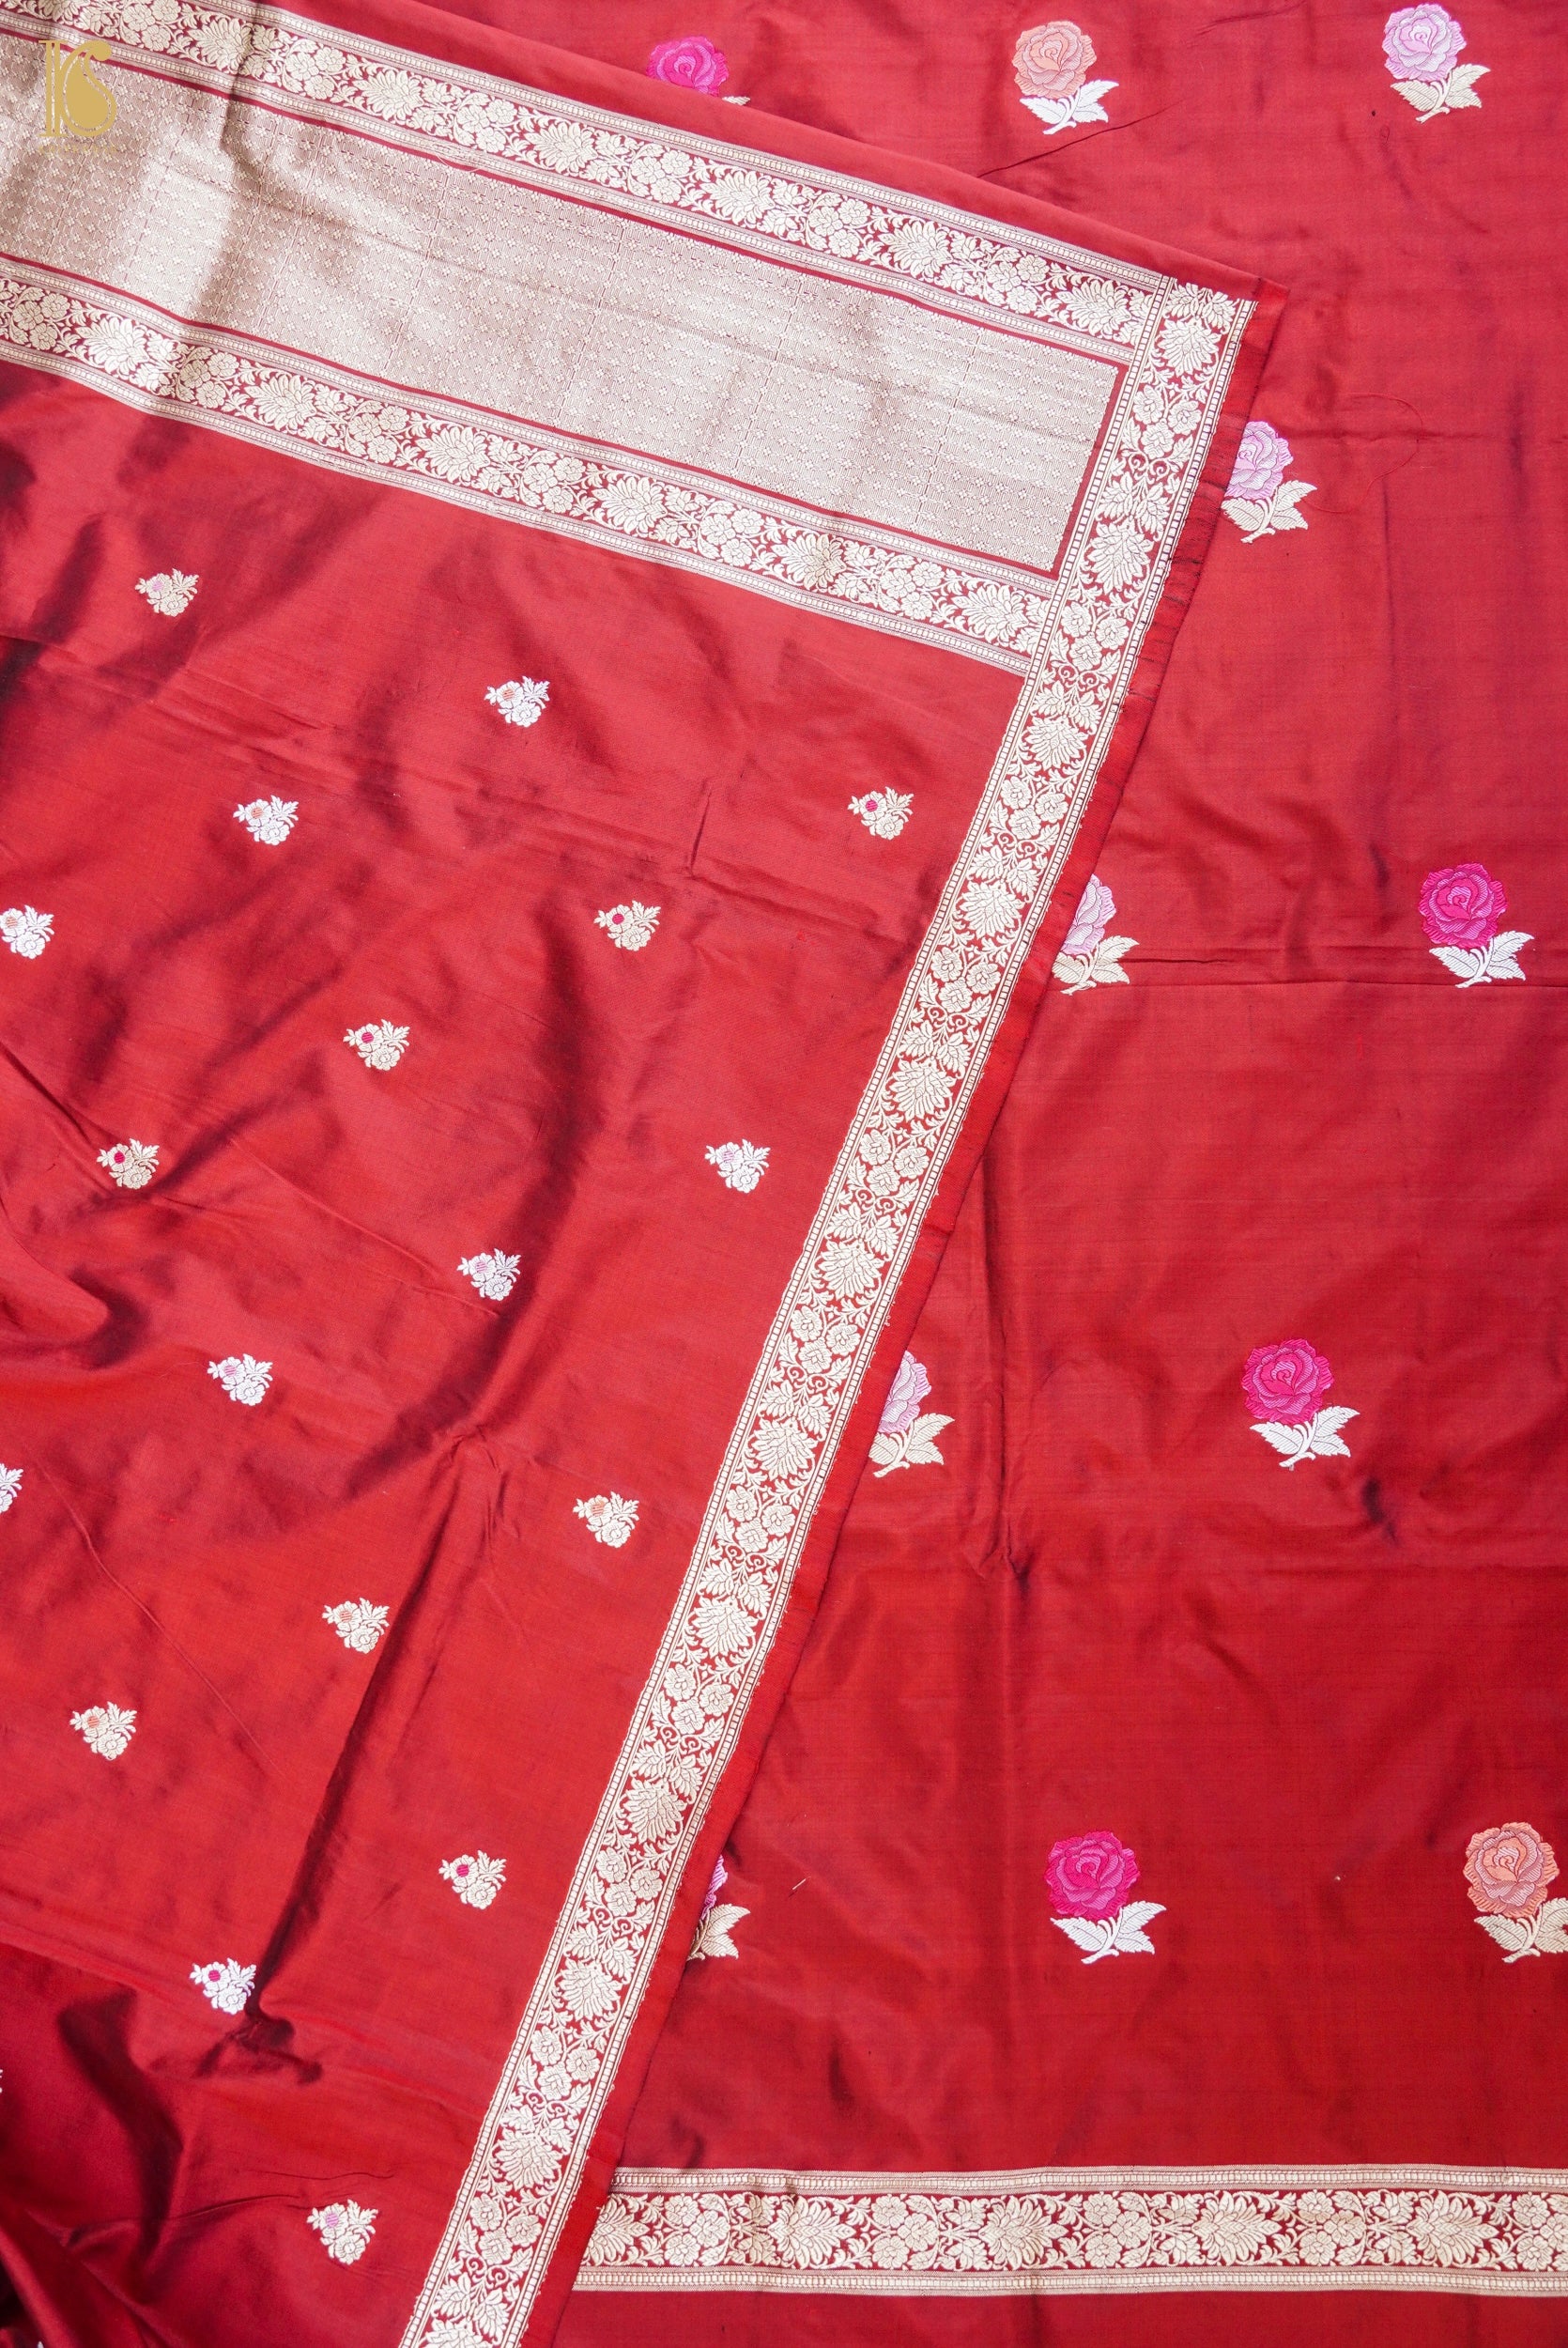 Handwoven Banarasi Katan Silk Suit Fabric Set